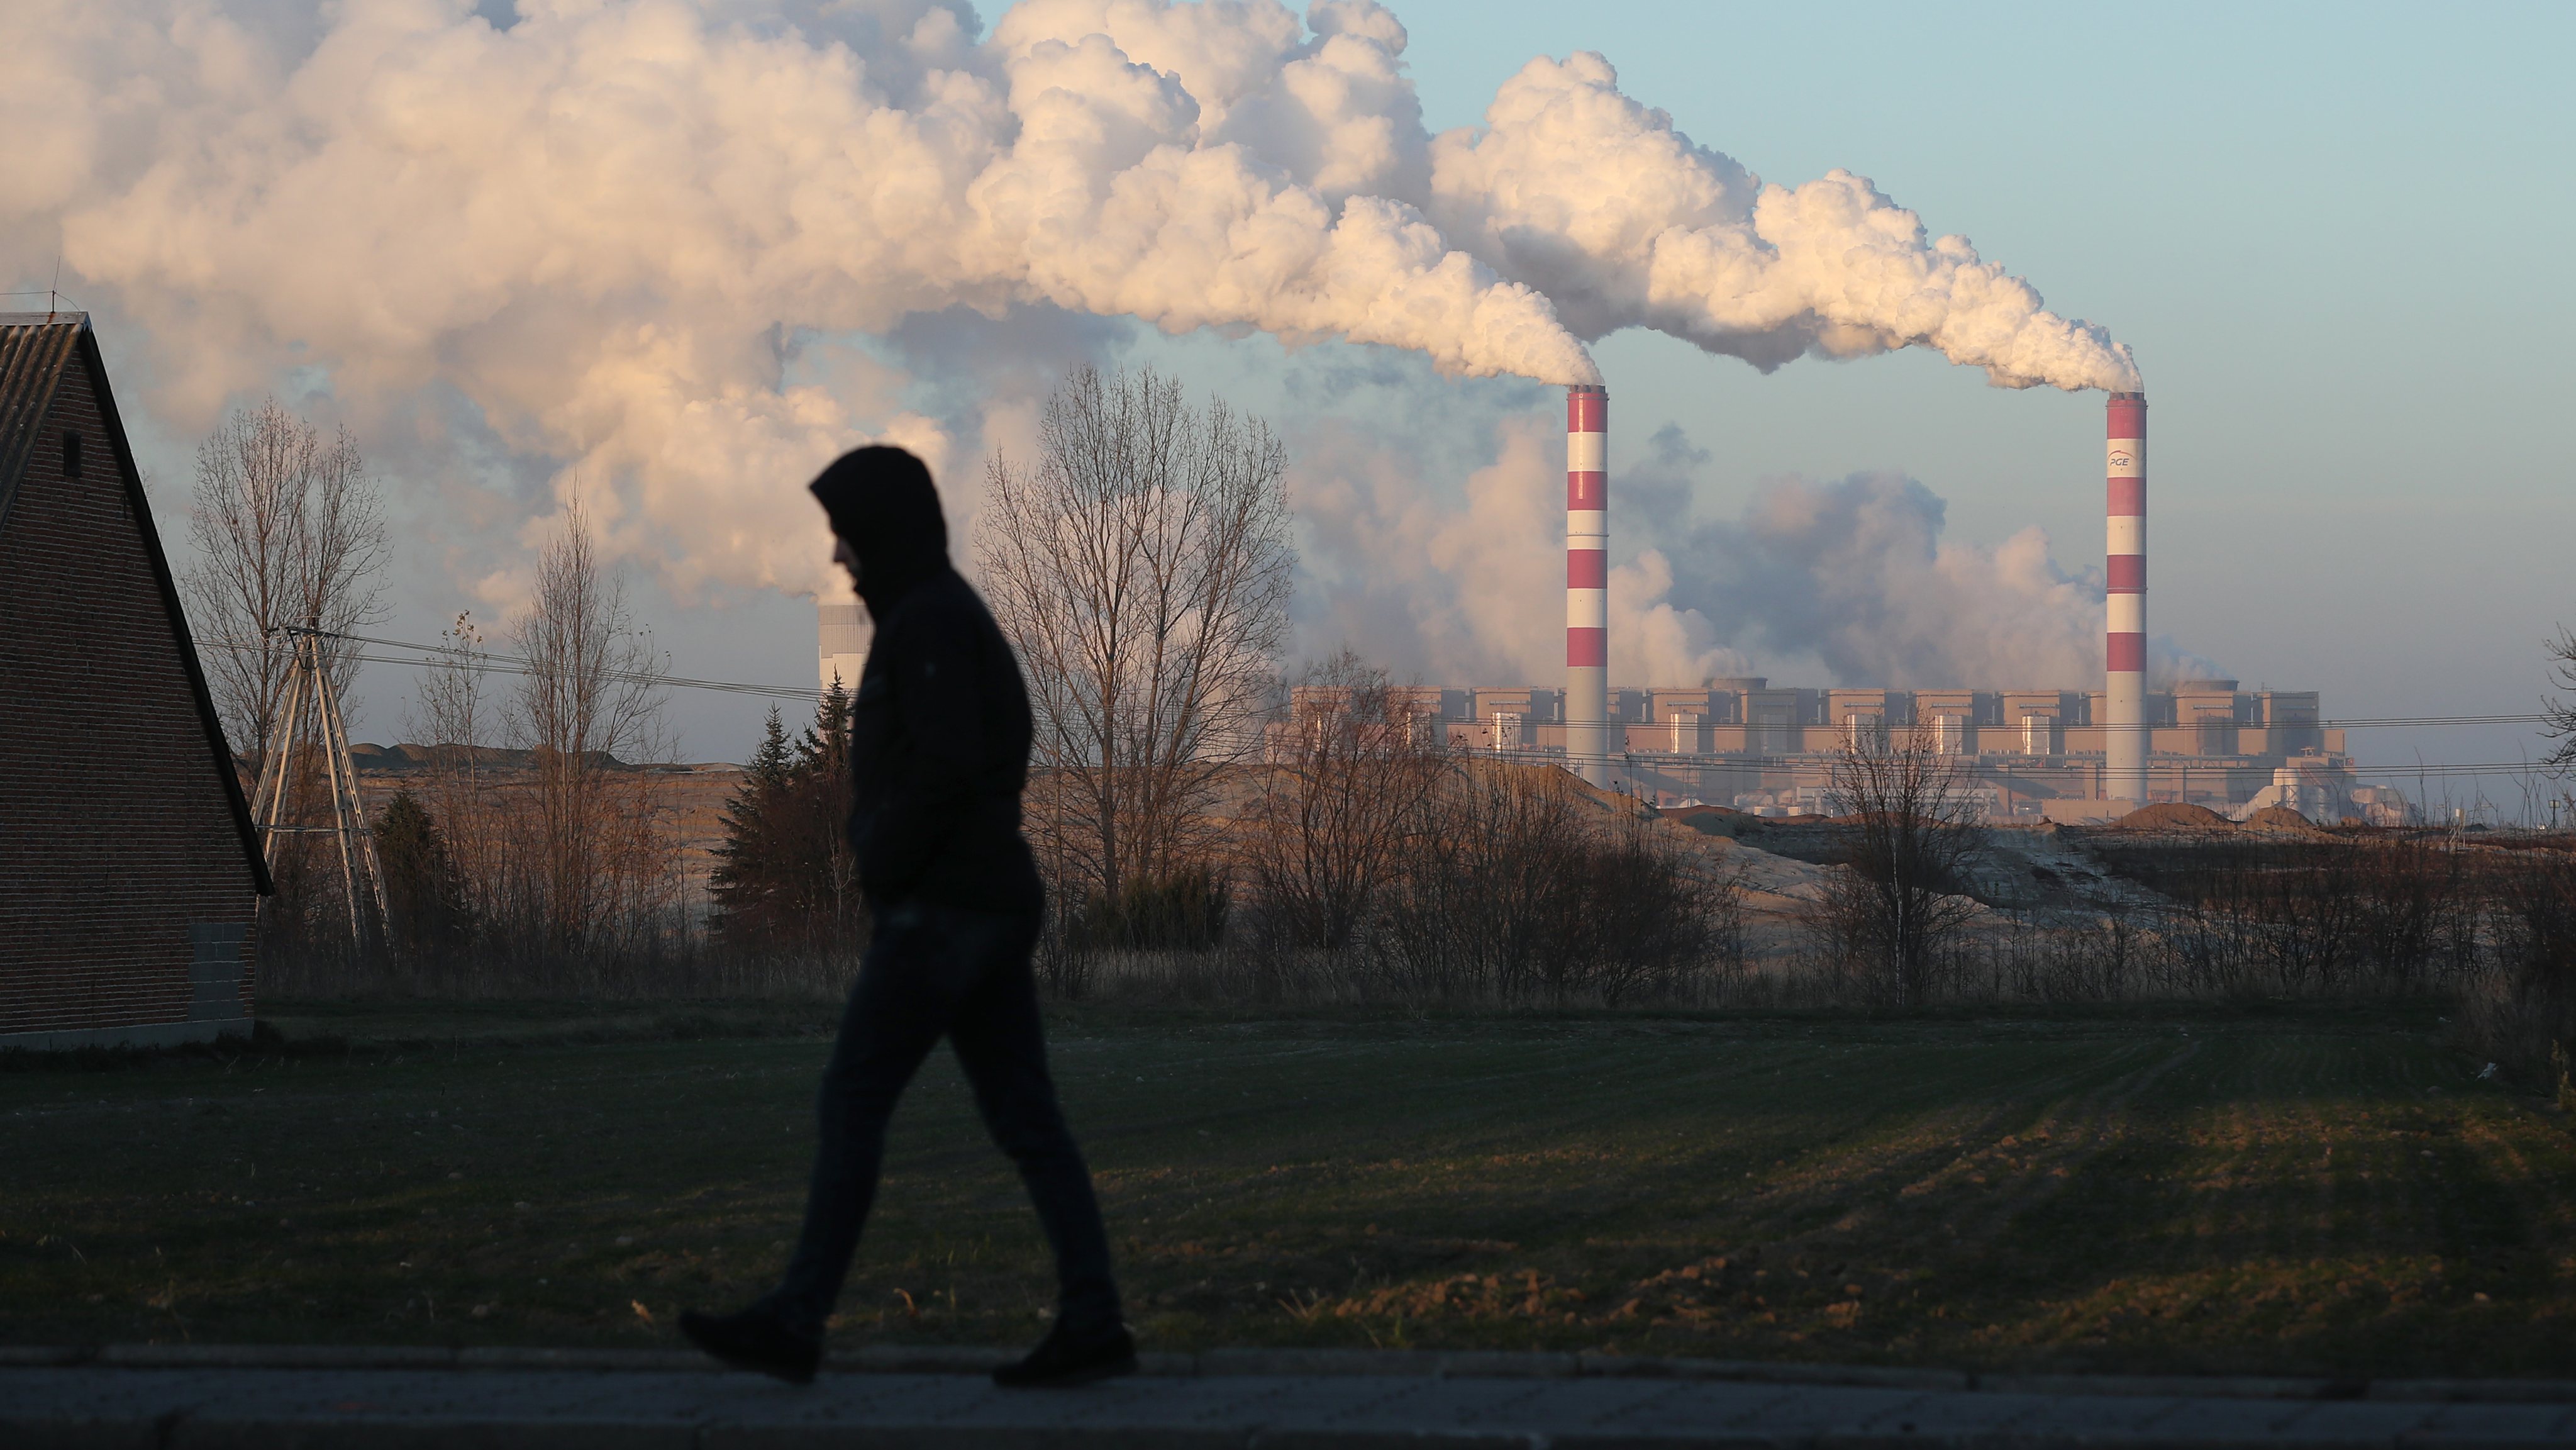 Central de produção de energia pela queima de carvão na Polónia, uma das fontes de partículas finas